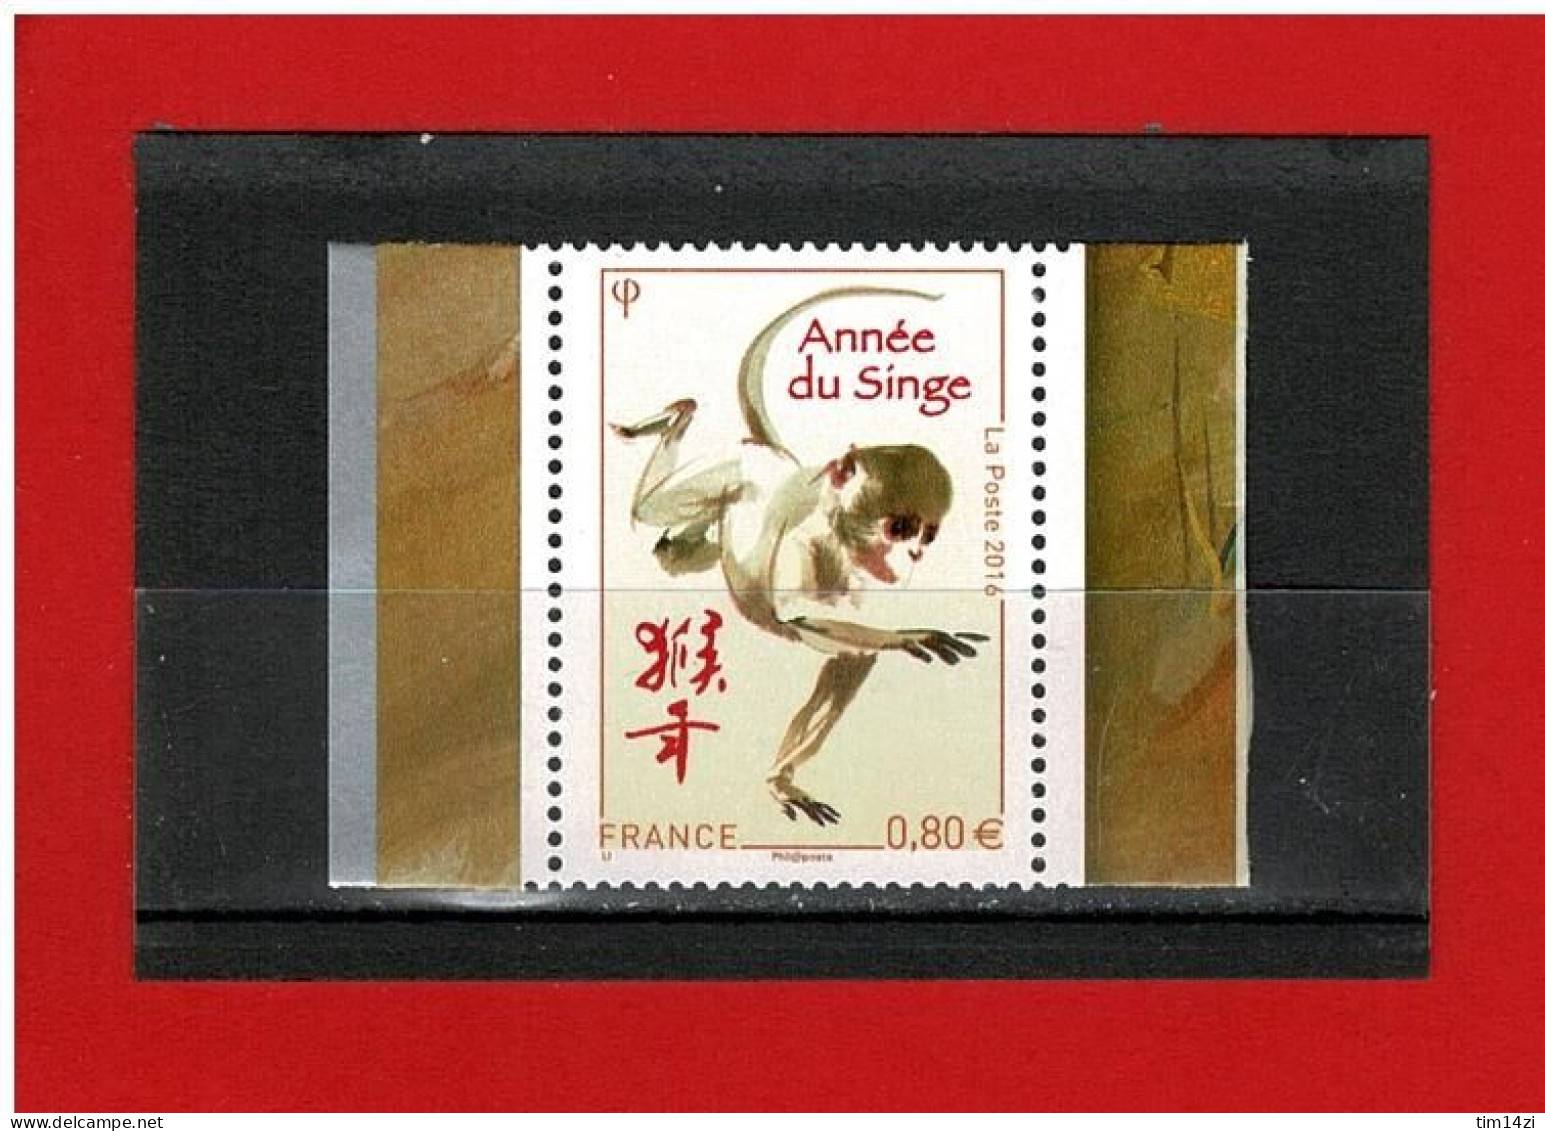 2016 - ANNEE LUNAIRE CHINOISE DU SINGE - N°5031 - NEUF** - COTE Y & T : 2.50 Euros - Unused Stamps